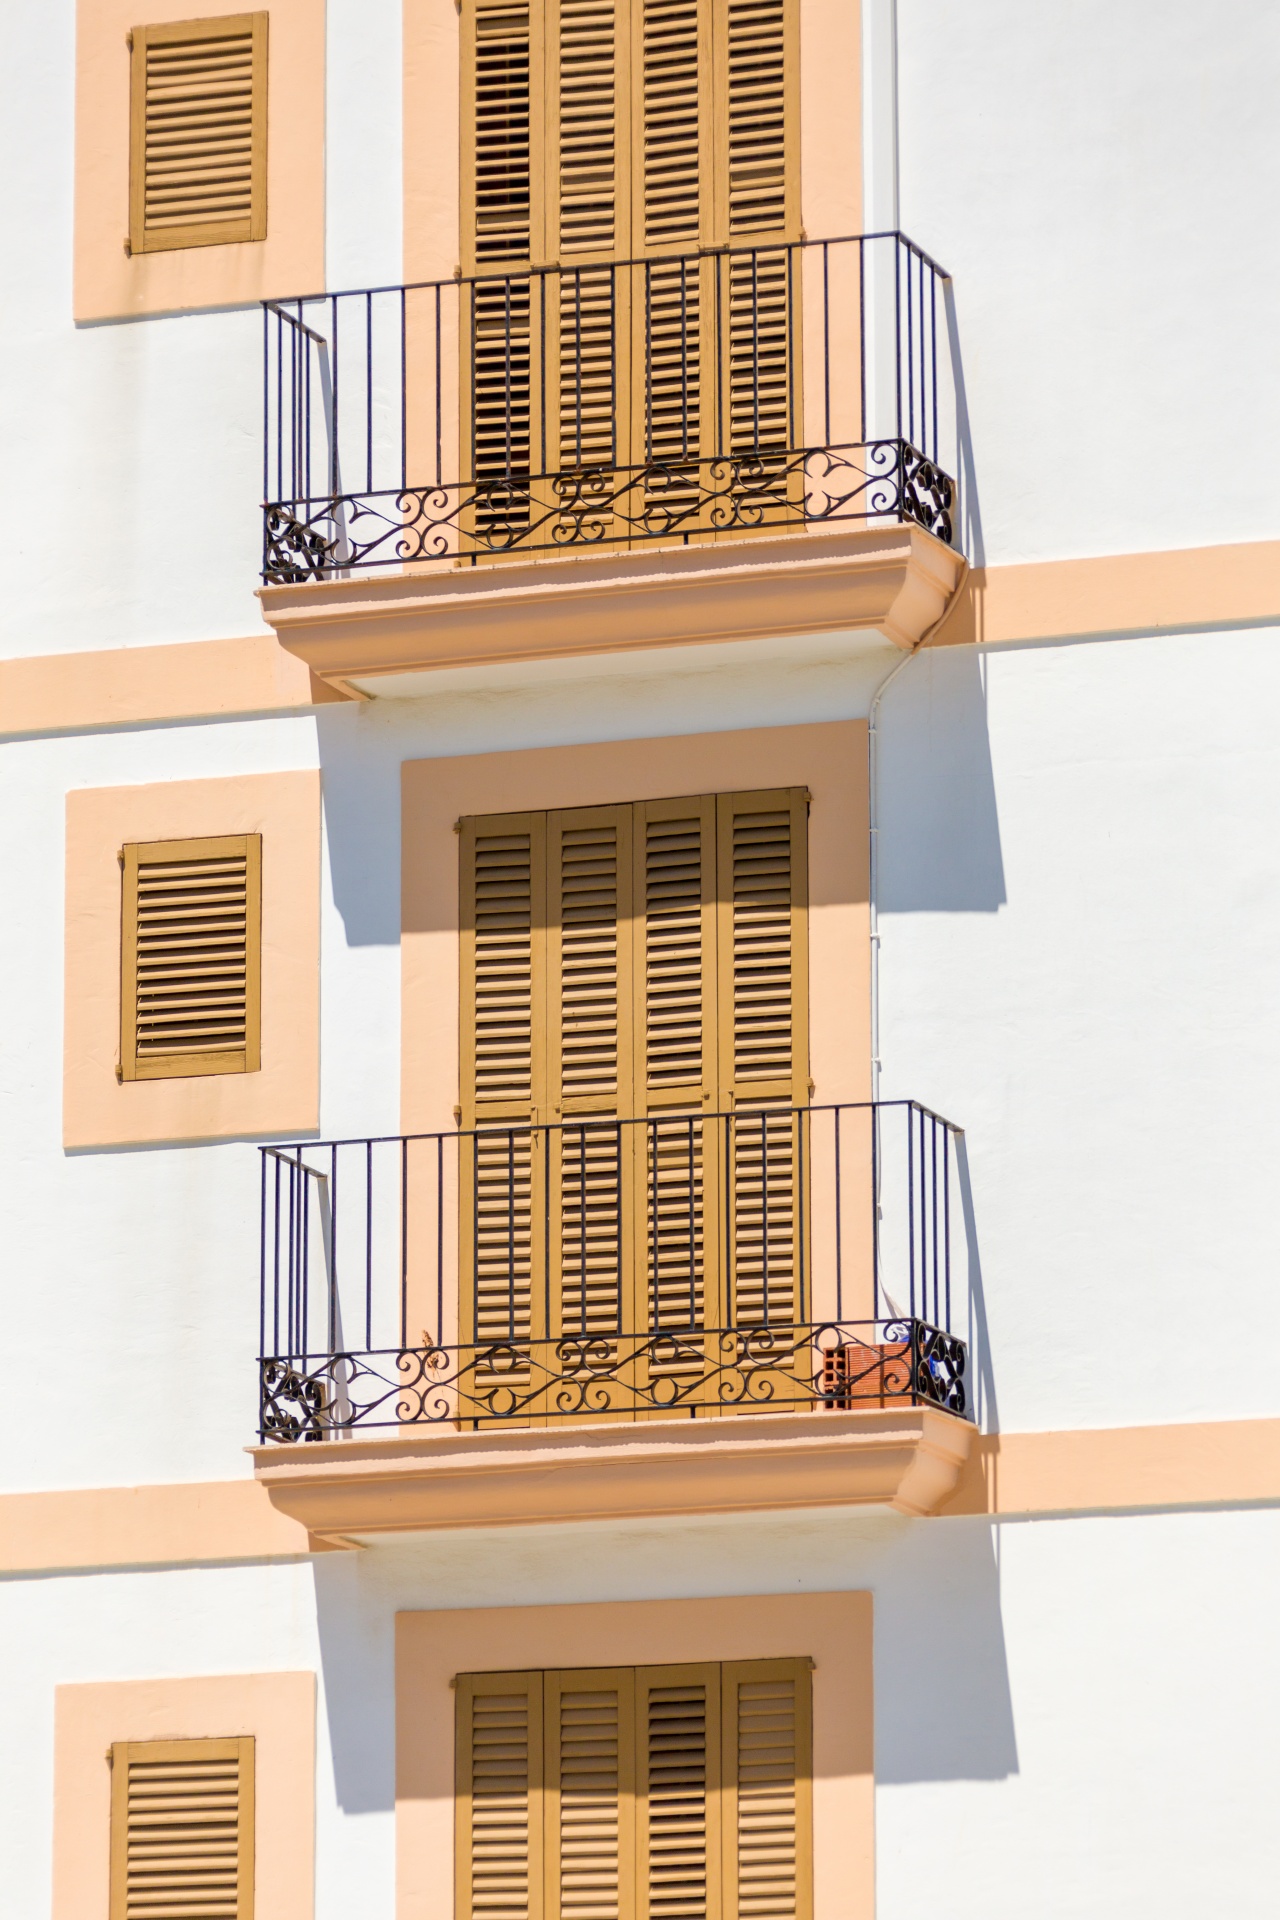 Orange and white Mediterranean balconies